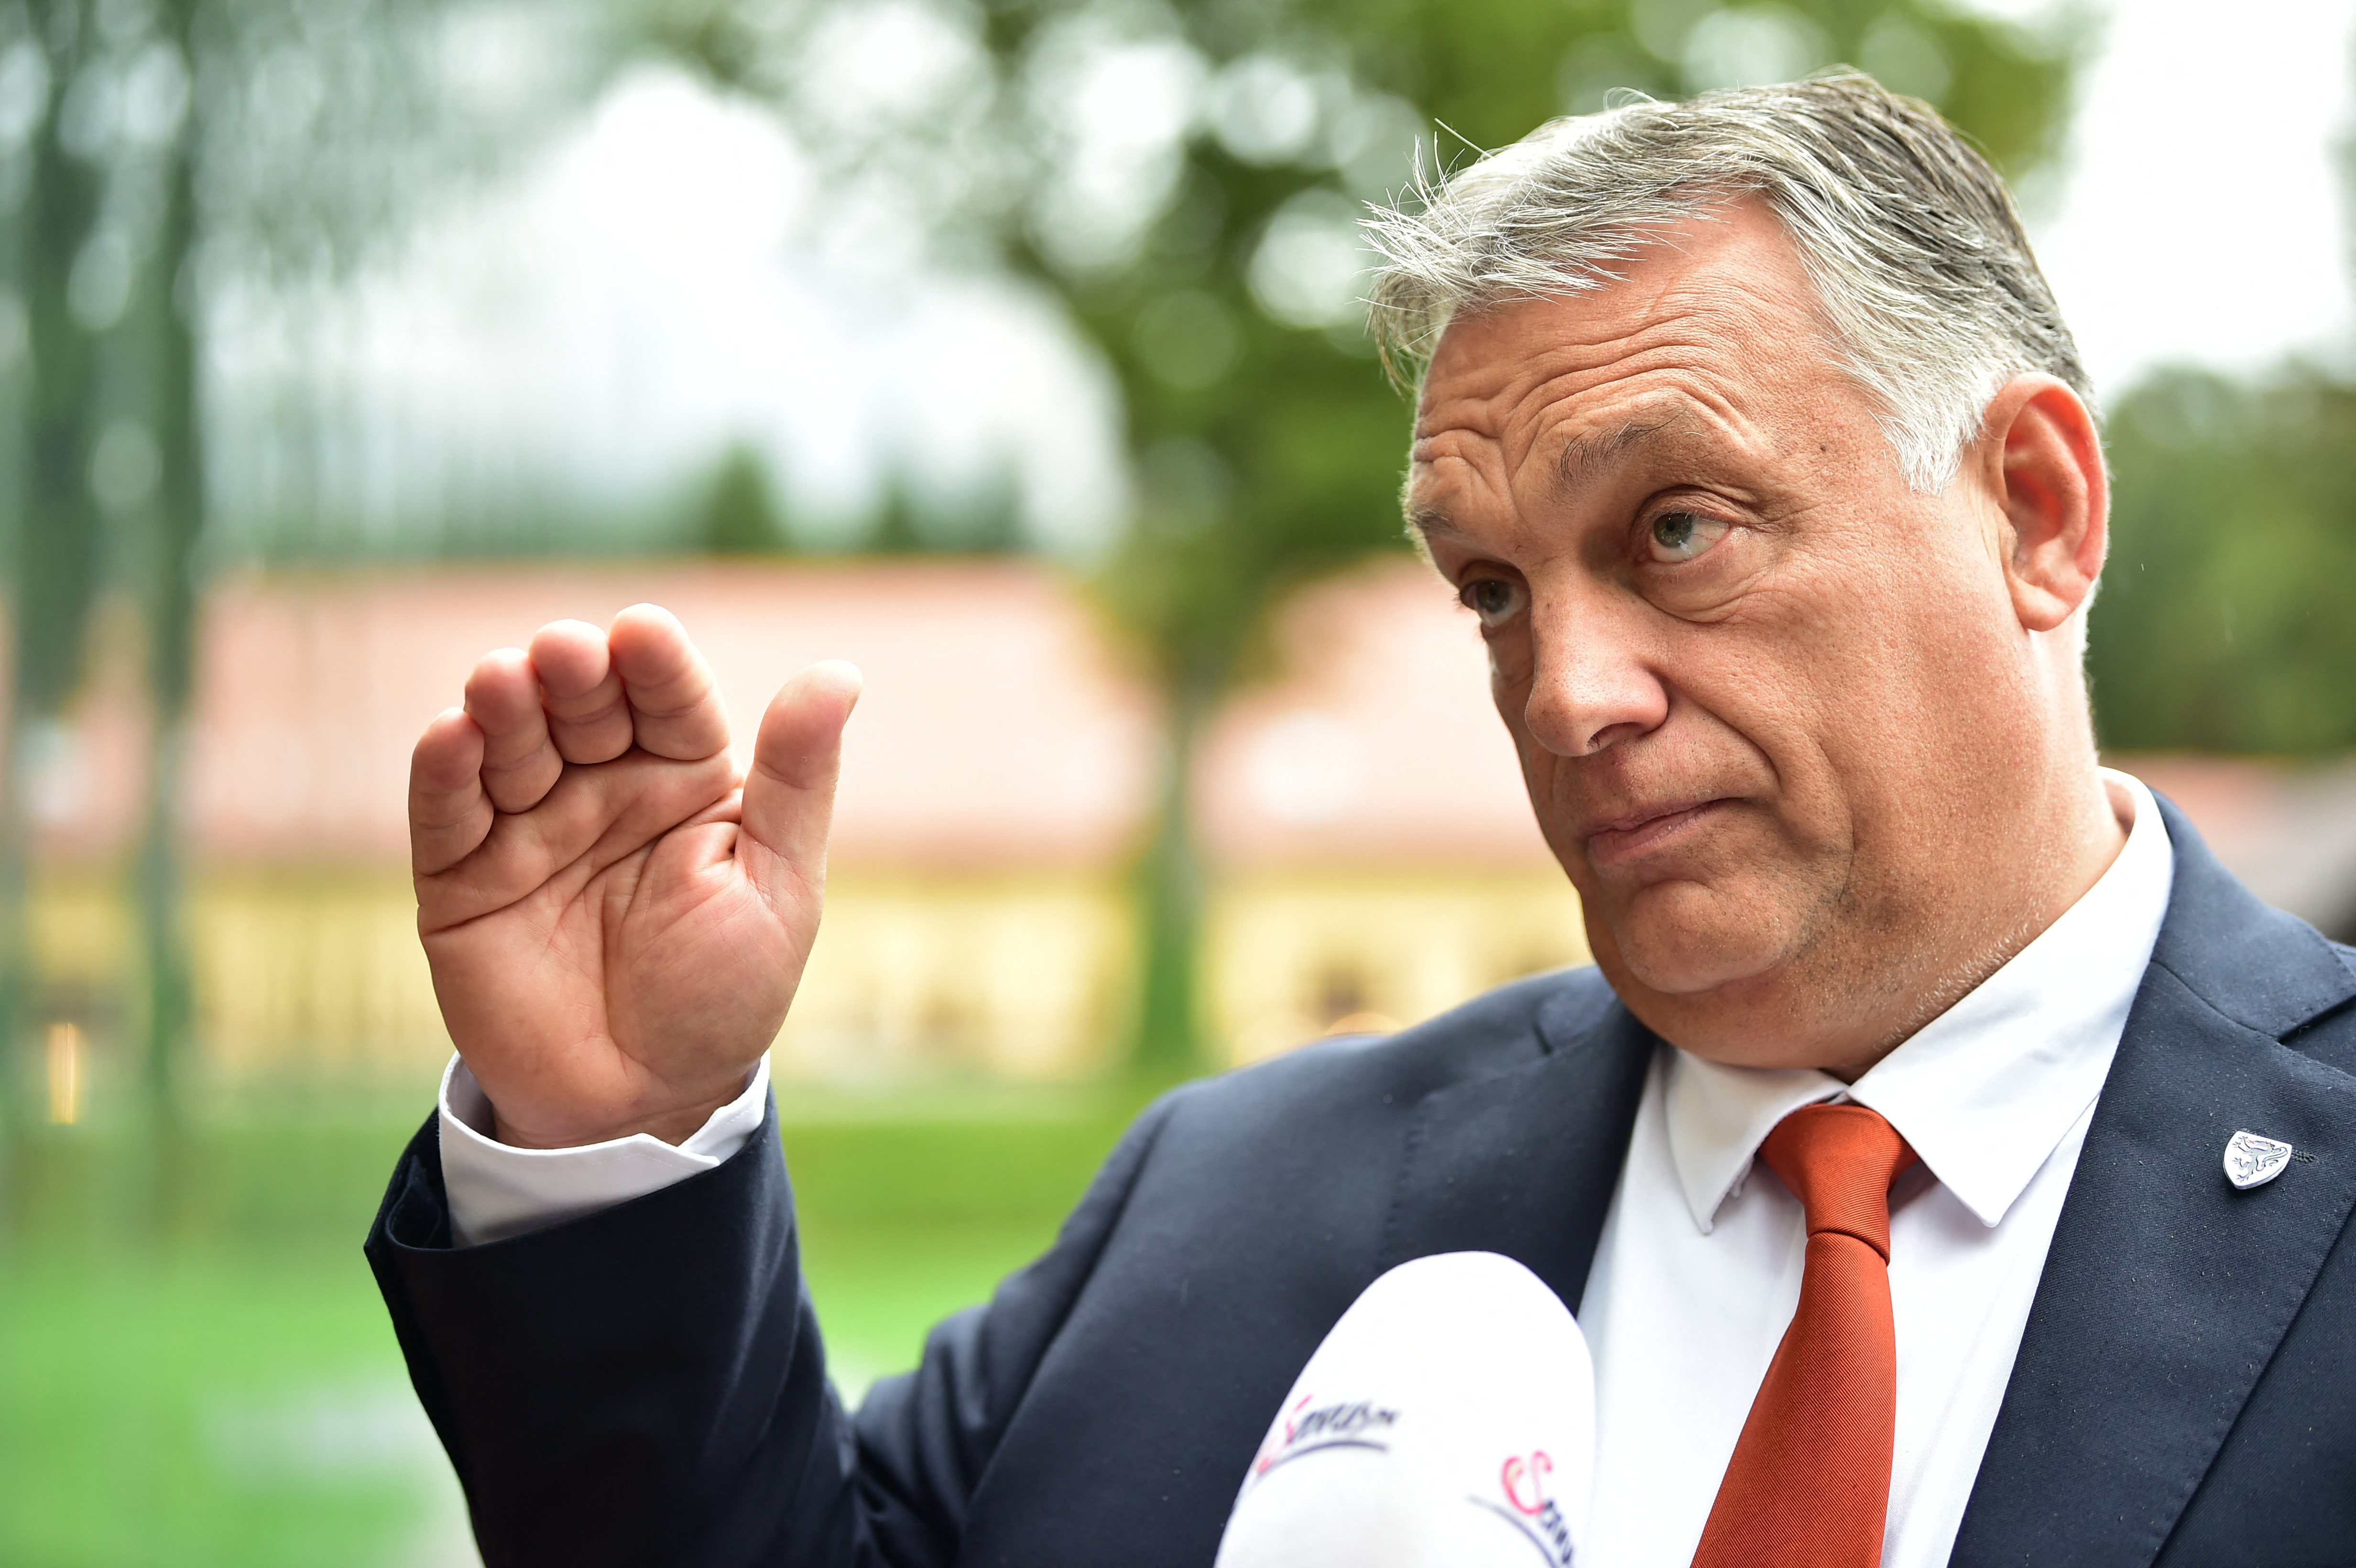 A magyar kormány új határozata szerint az uniós intézmények kötelesek tiszteletben tartani a tagállamok nemzeti identitását